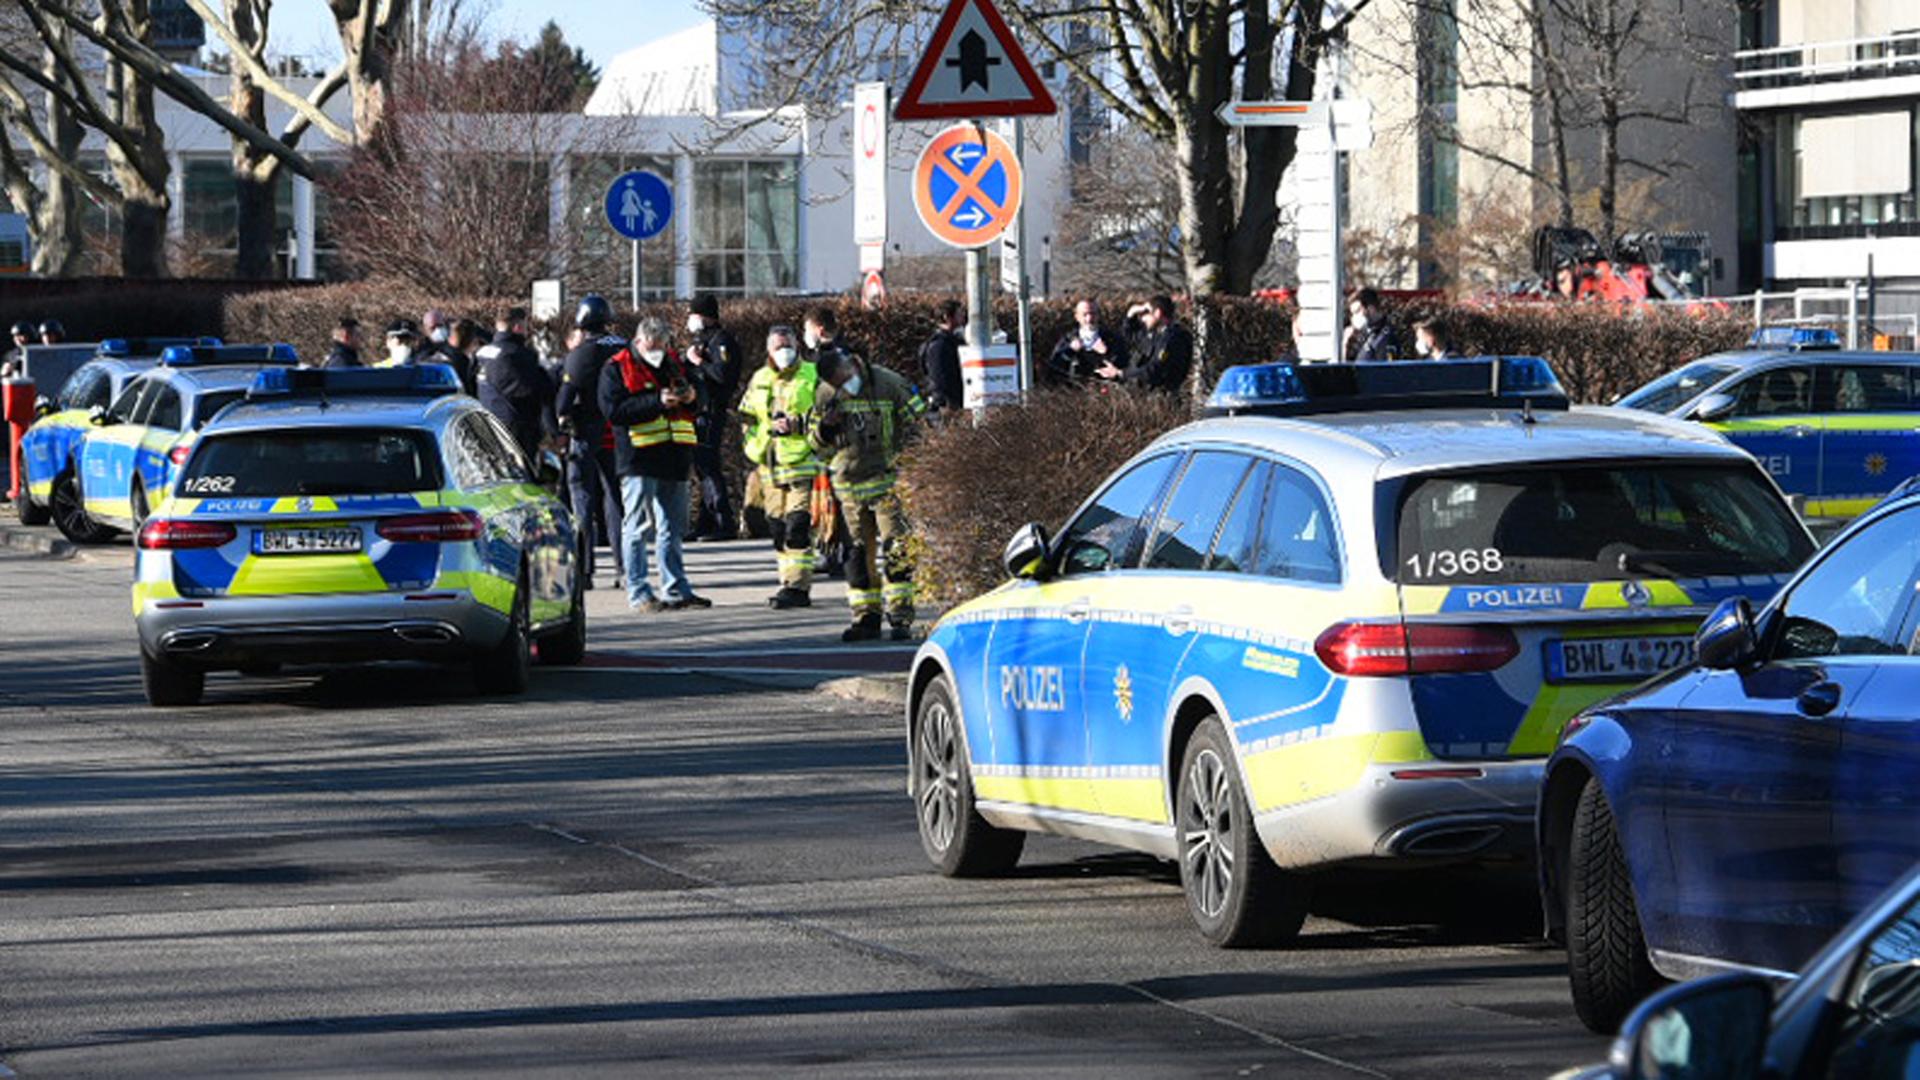 Polizei-Wagen stehen auf dem Gelände von der Universität in Heidelberg.